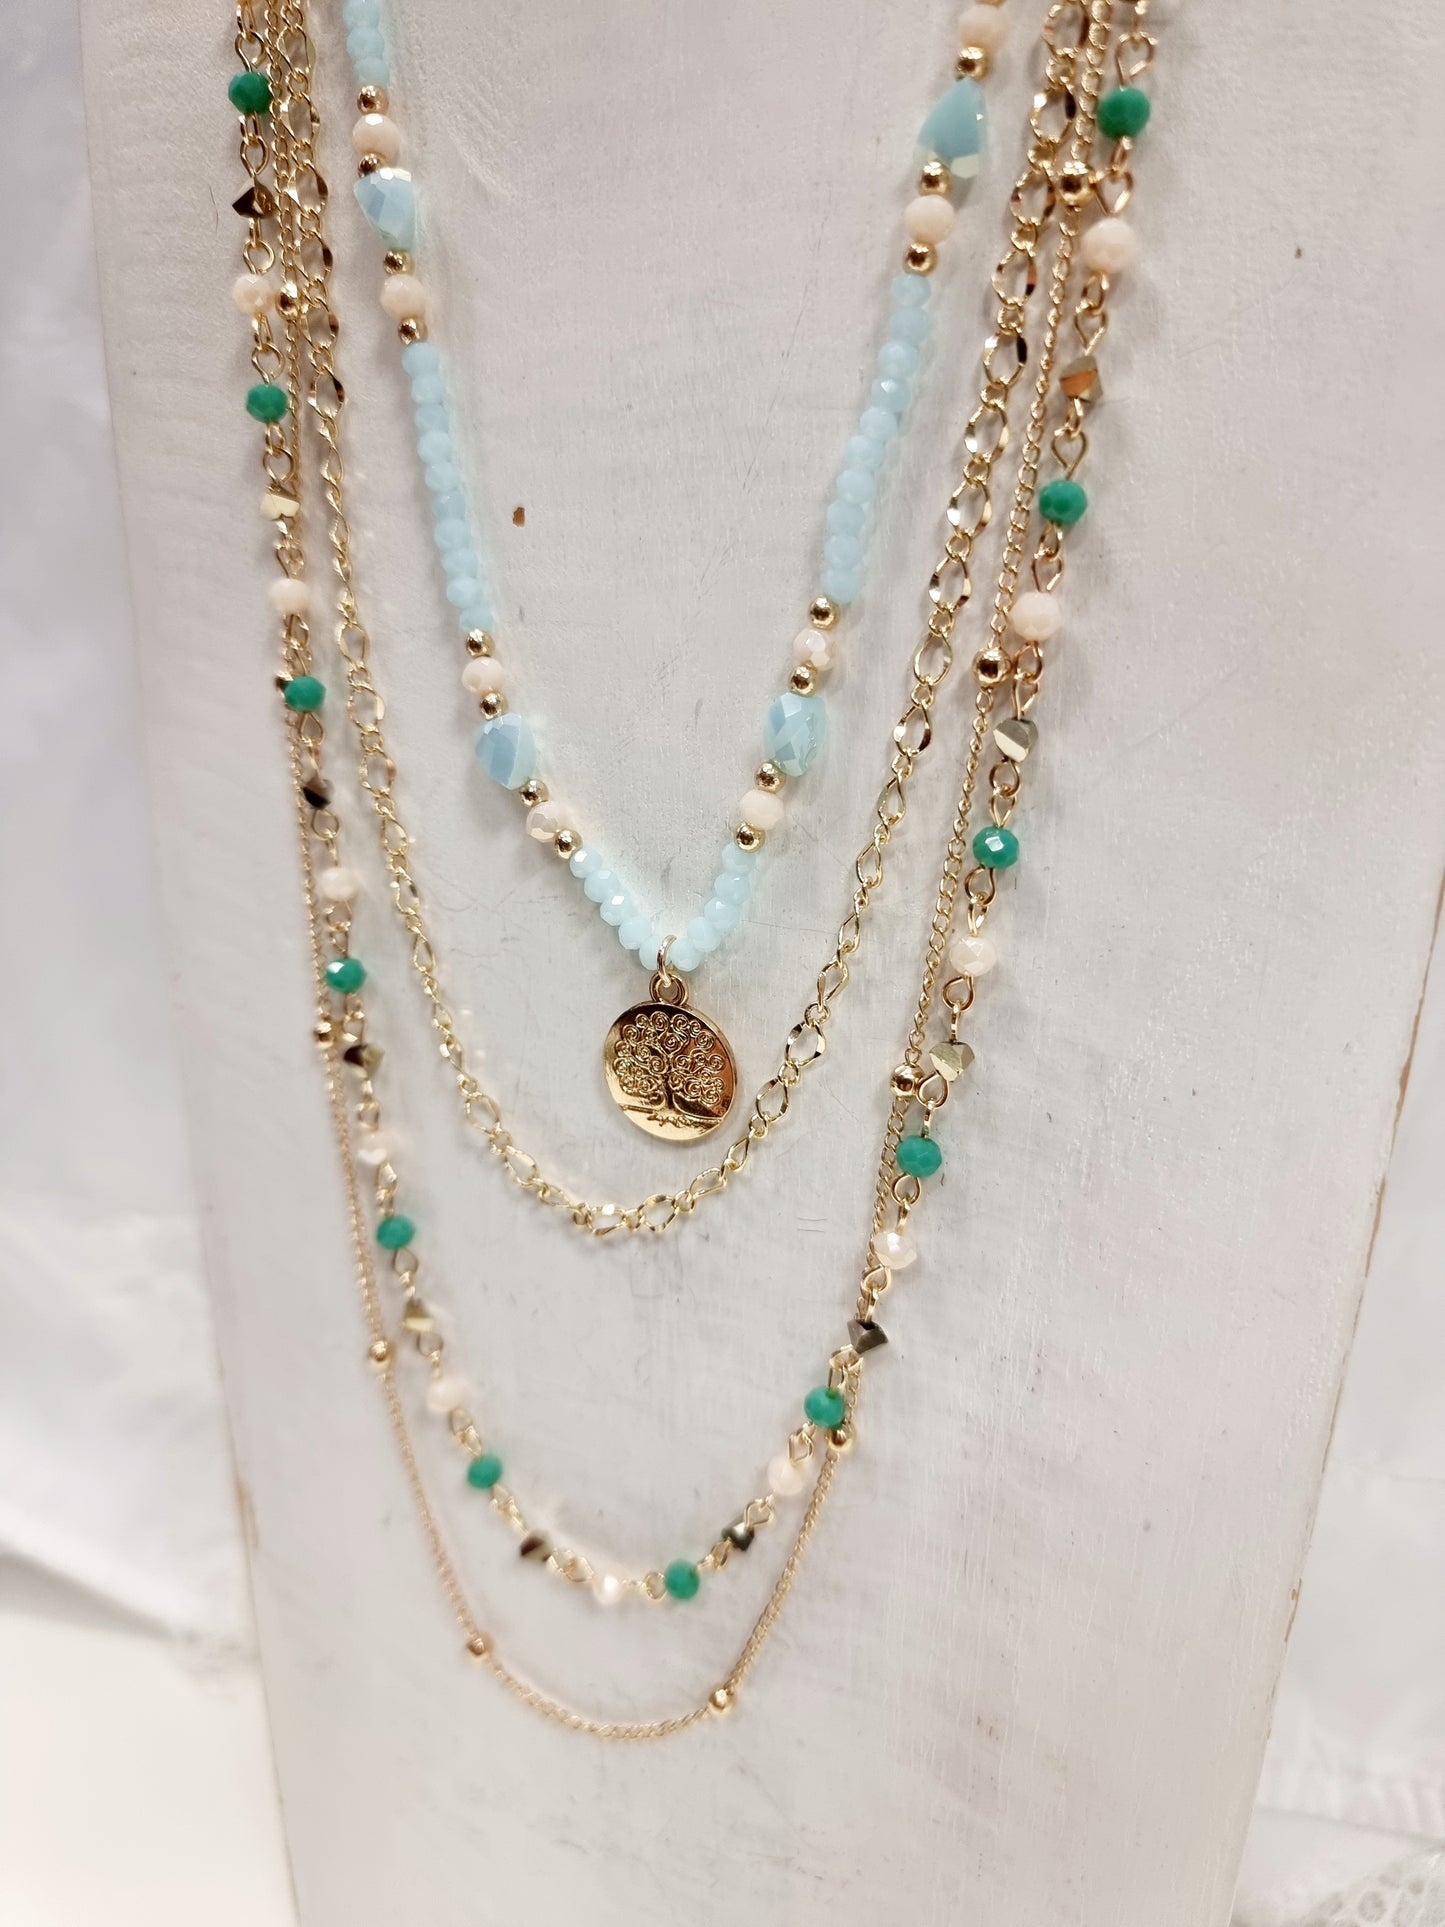 Lange 4-reihige goldene Kette mit blau/türkisen Perlen